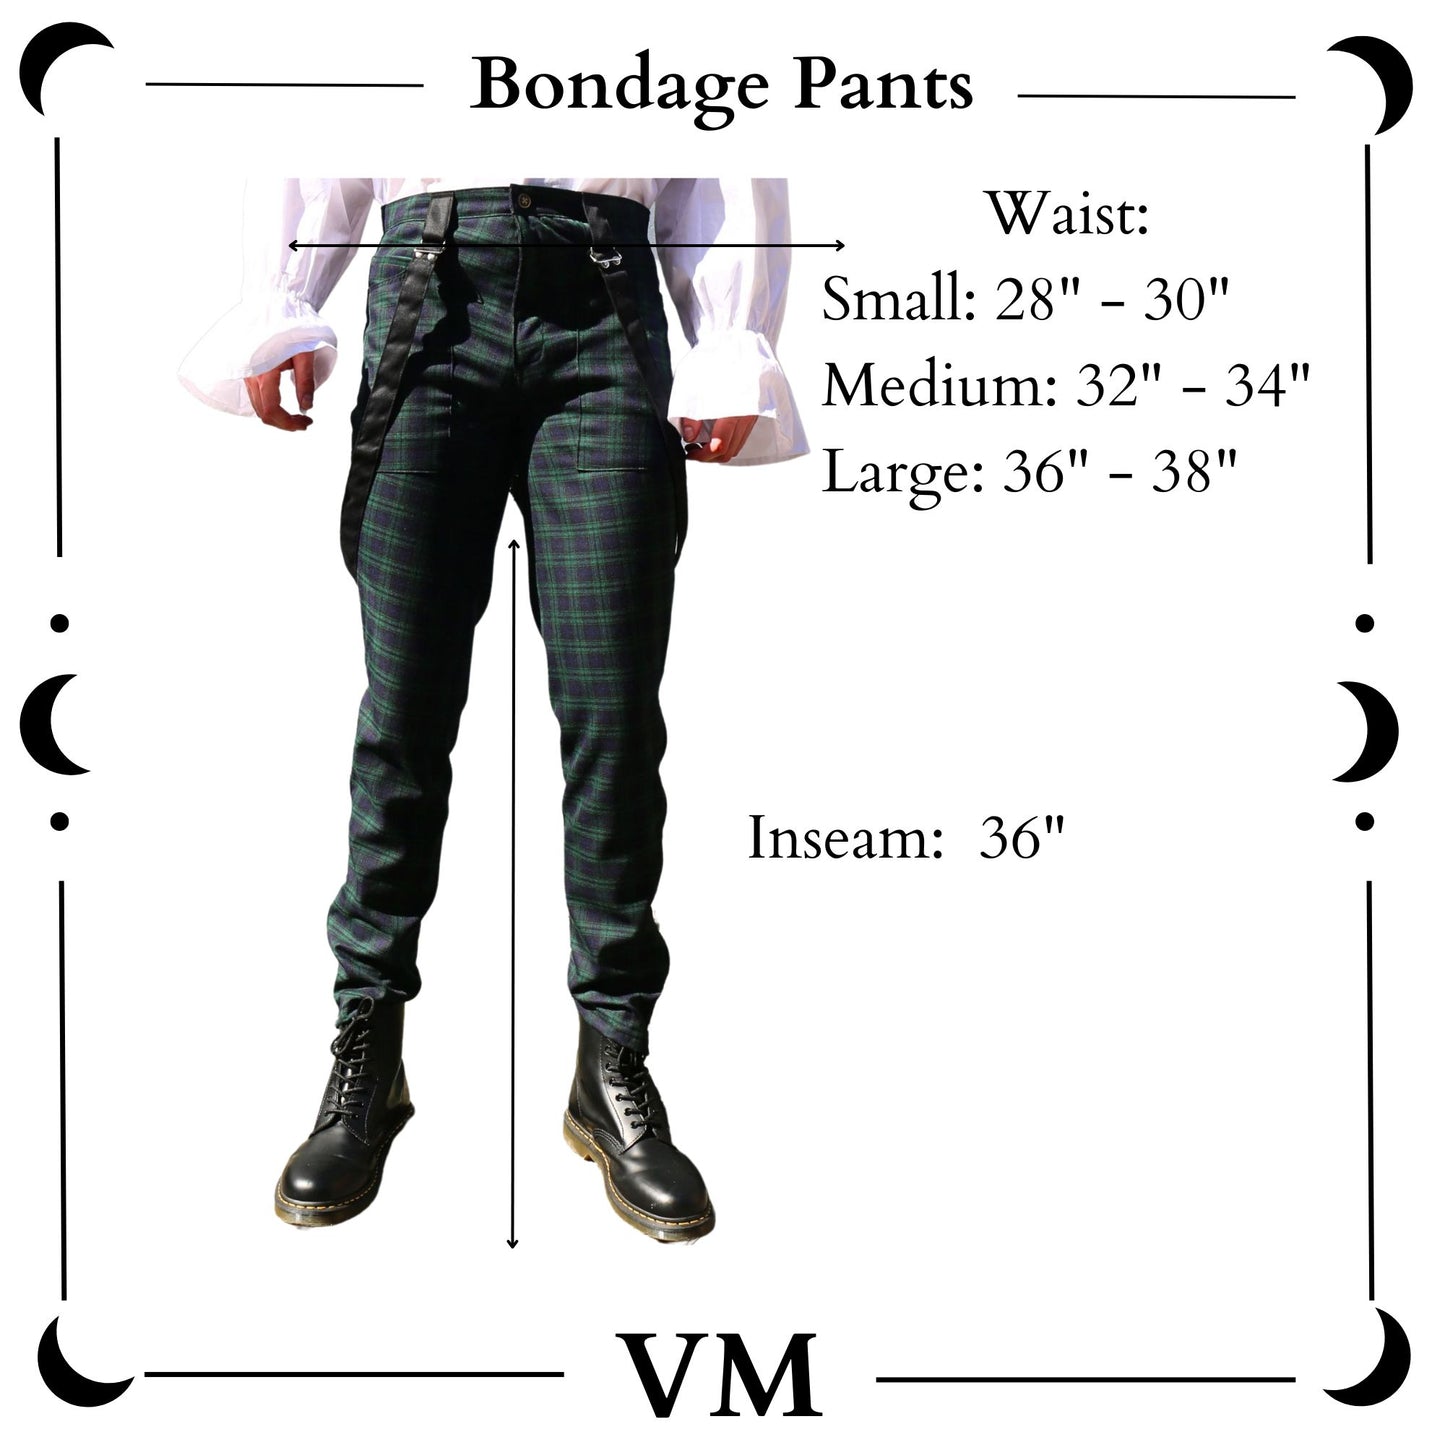 The VM Bondage Pants